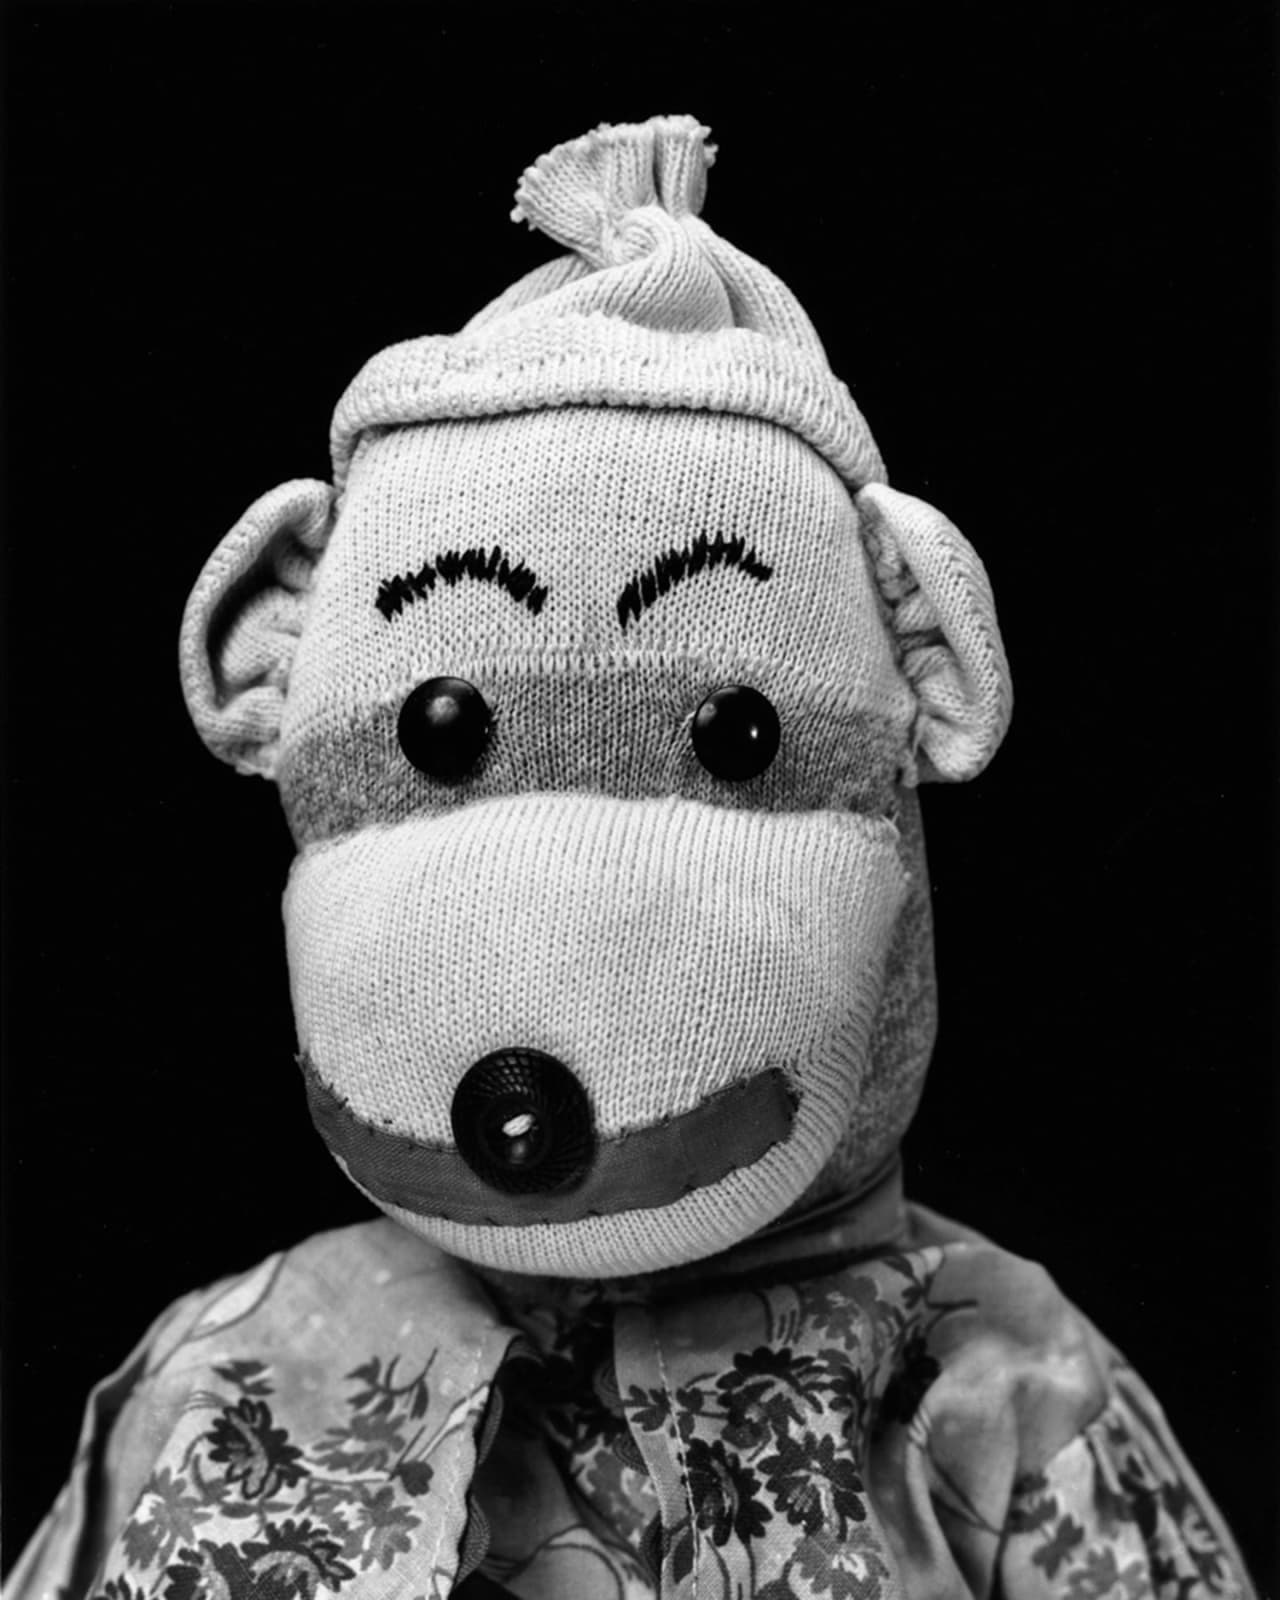 Arne Svenson, Sock Monkey 71, 2002